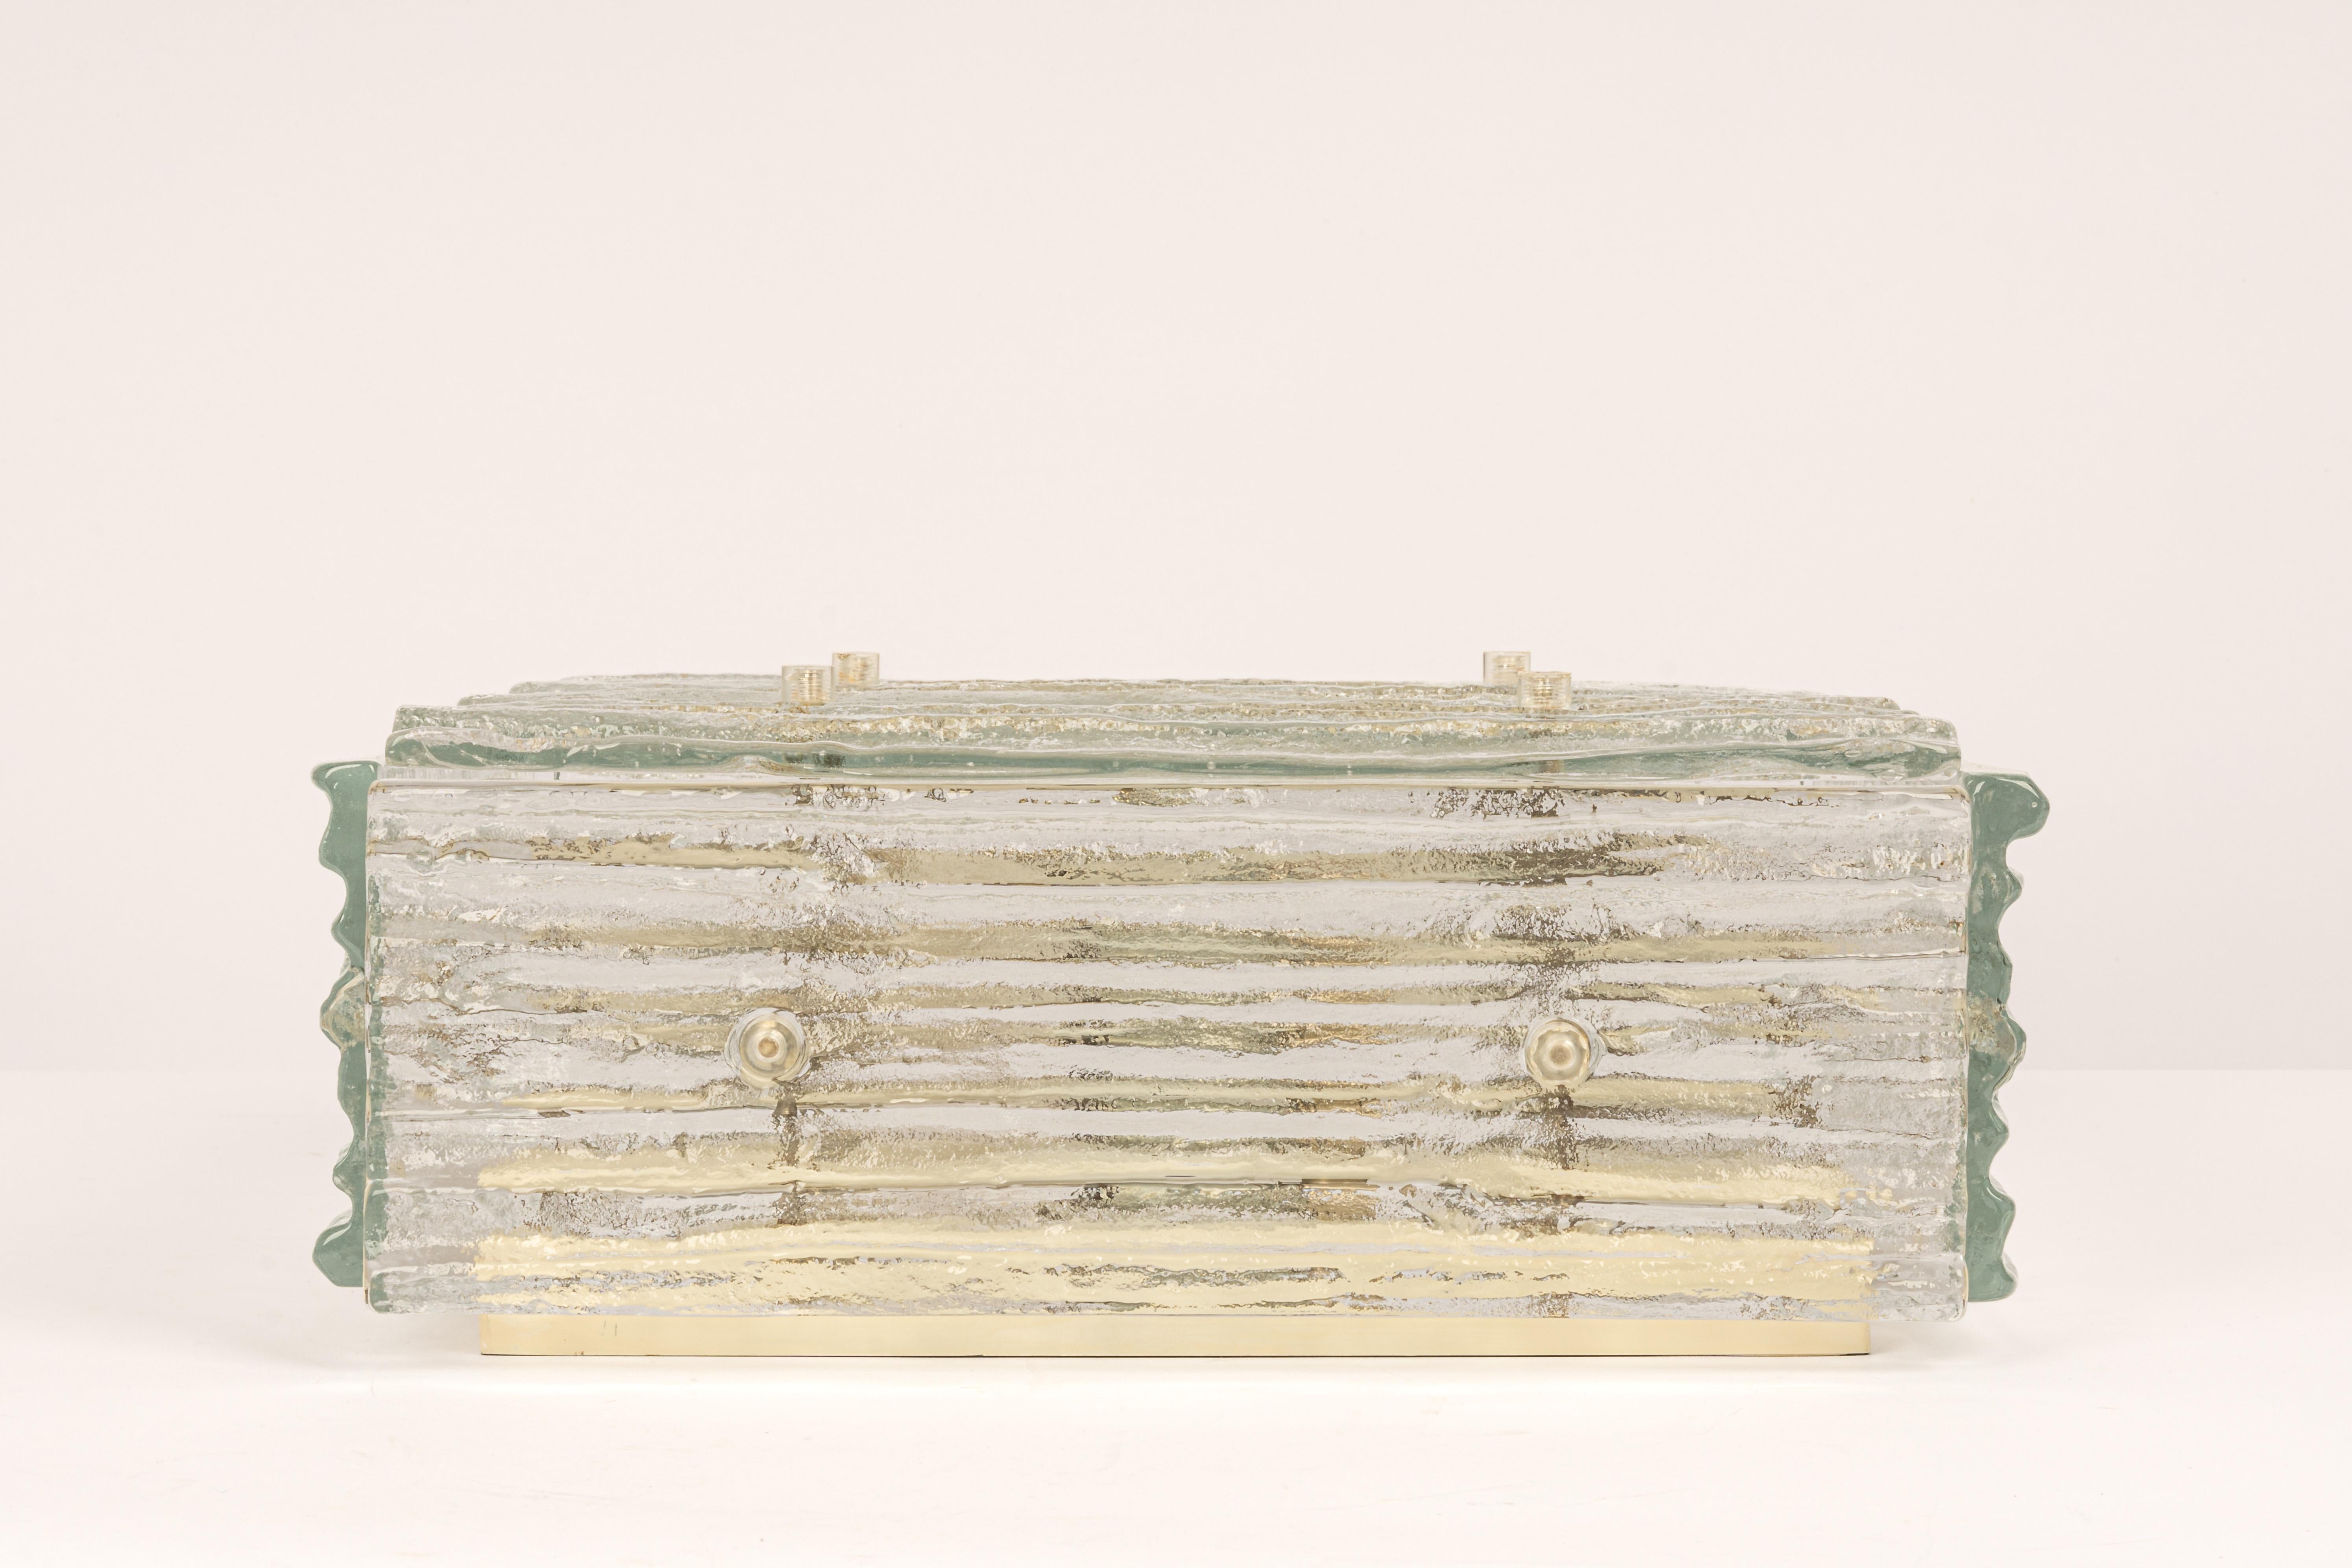 Eine beeindruckende Unterputz- oder Wandleuchte von Kalmar, Österreich, hergestellt in den 1960er Jahren.
Die Unterputzleuchte besteht aus 5 dicken, strukturierten Muranoglaselementen, die in einem weißen Rahmen befestigt sind.

Schwere Qualität